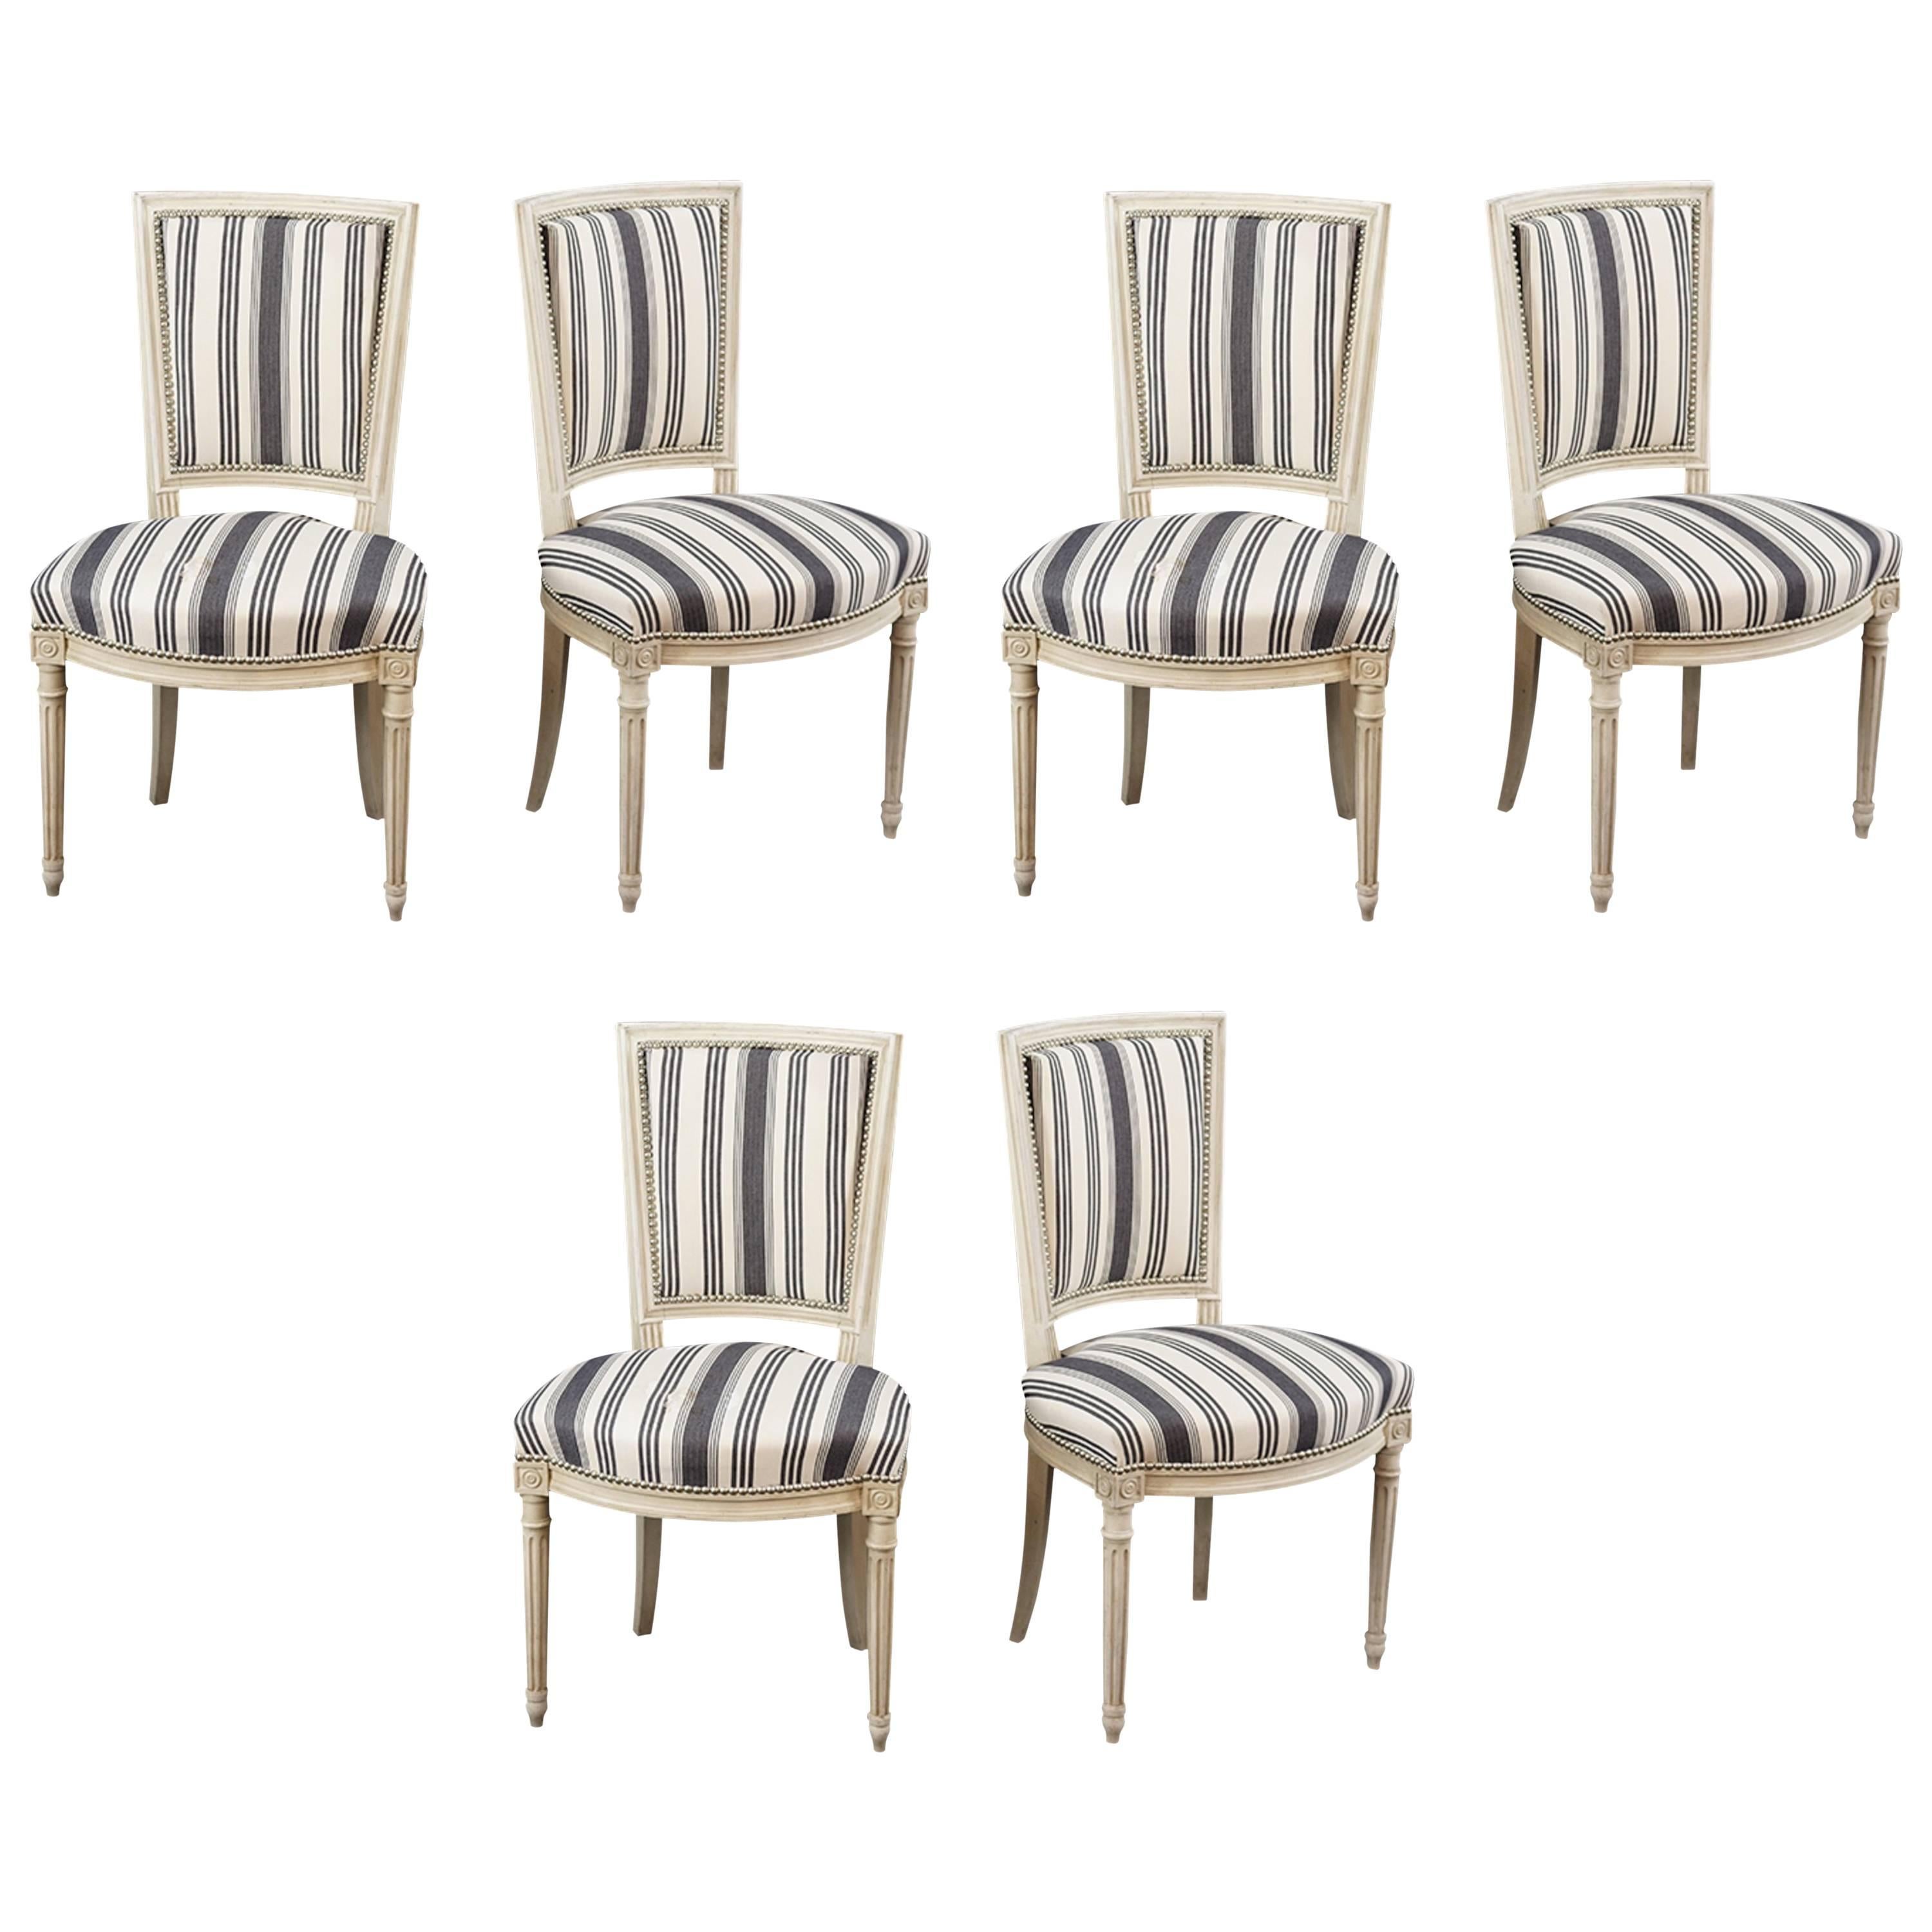 Magnifique ensemble de six chaises d'appoint de style Louis XVI recouvertes d'une bande bleue et blanche